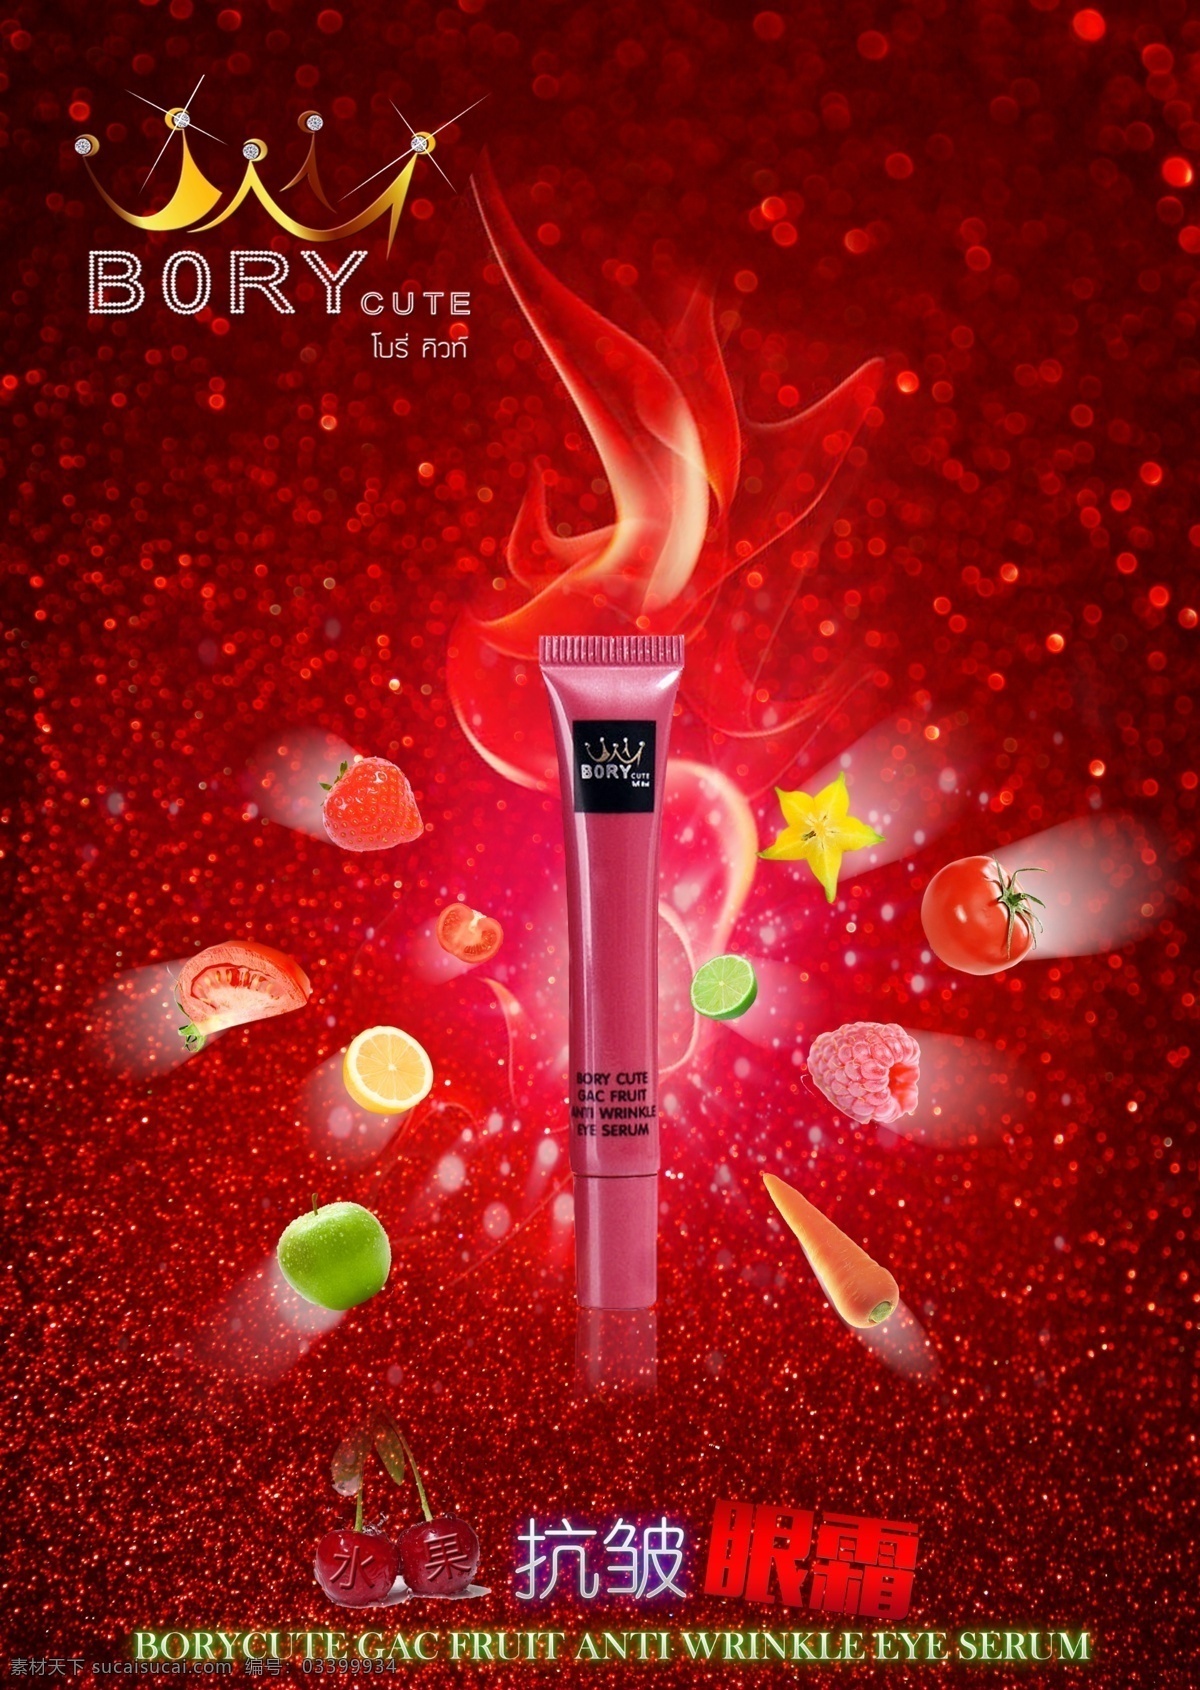 眼霜广告设计 borycute 泰国 护肤品 彩妆 化妆品 红色 光 火 水果 抗皱 眼霜